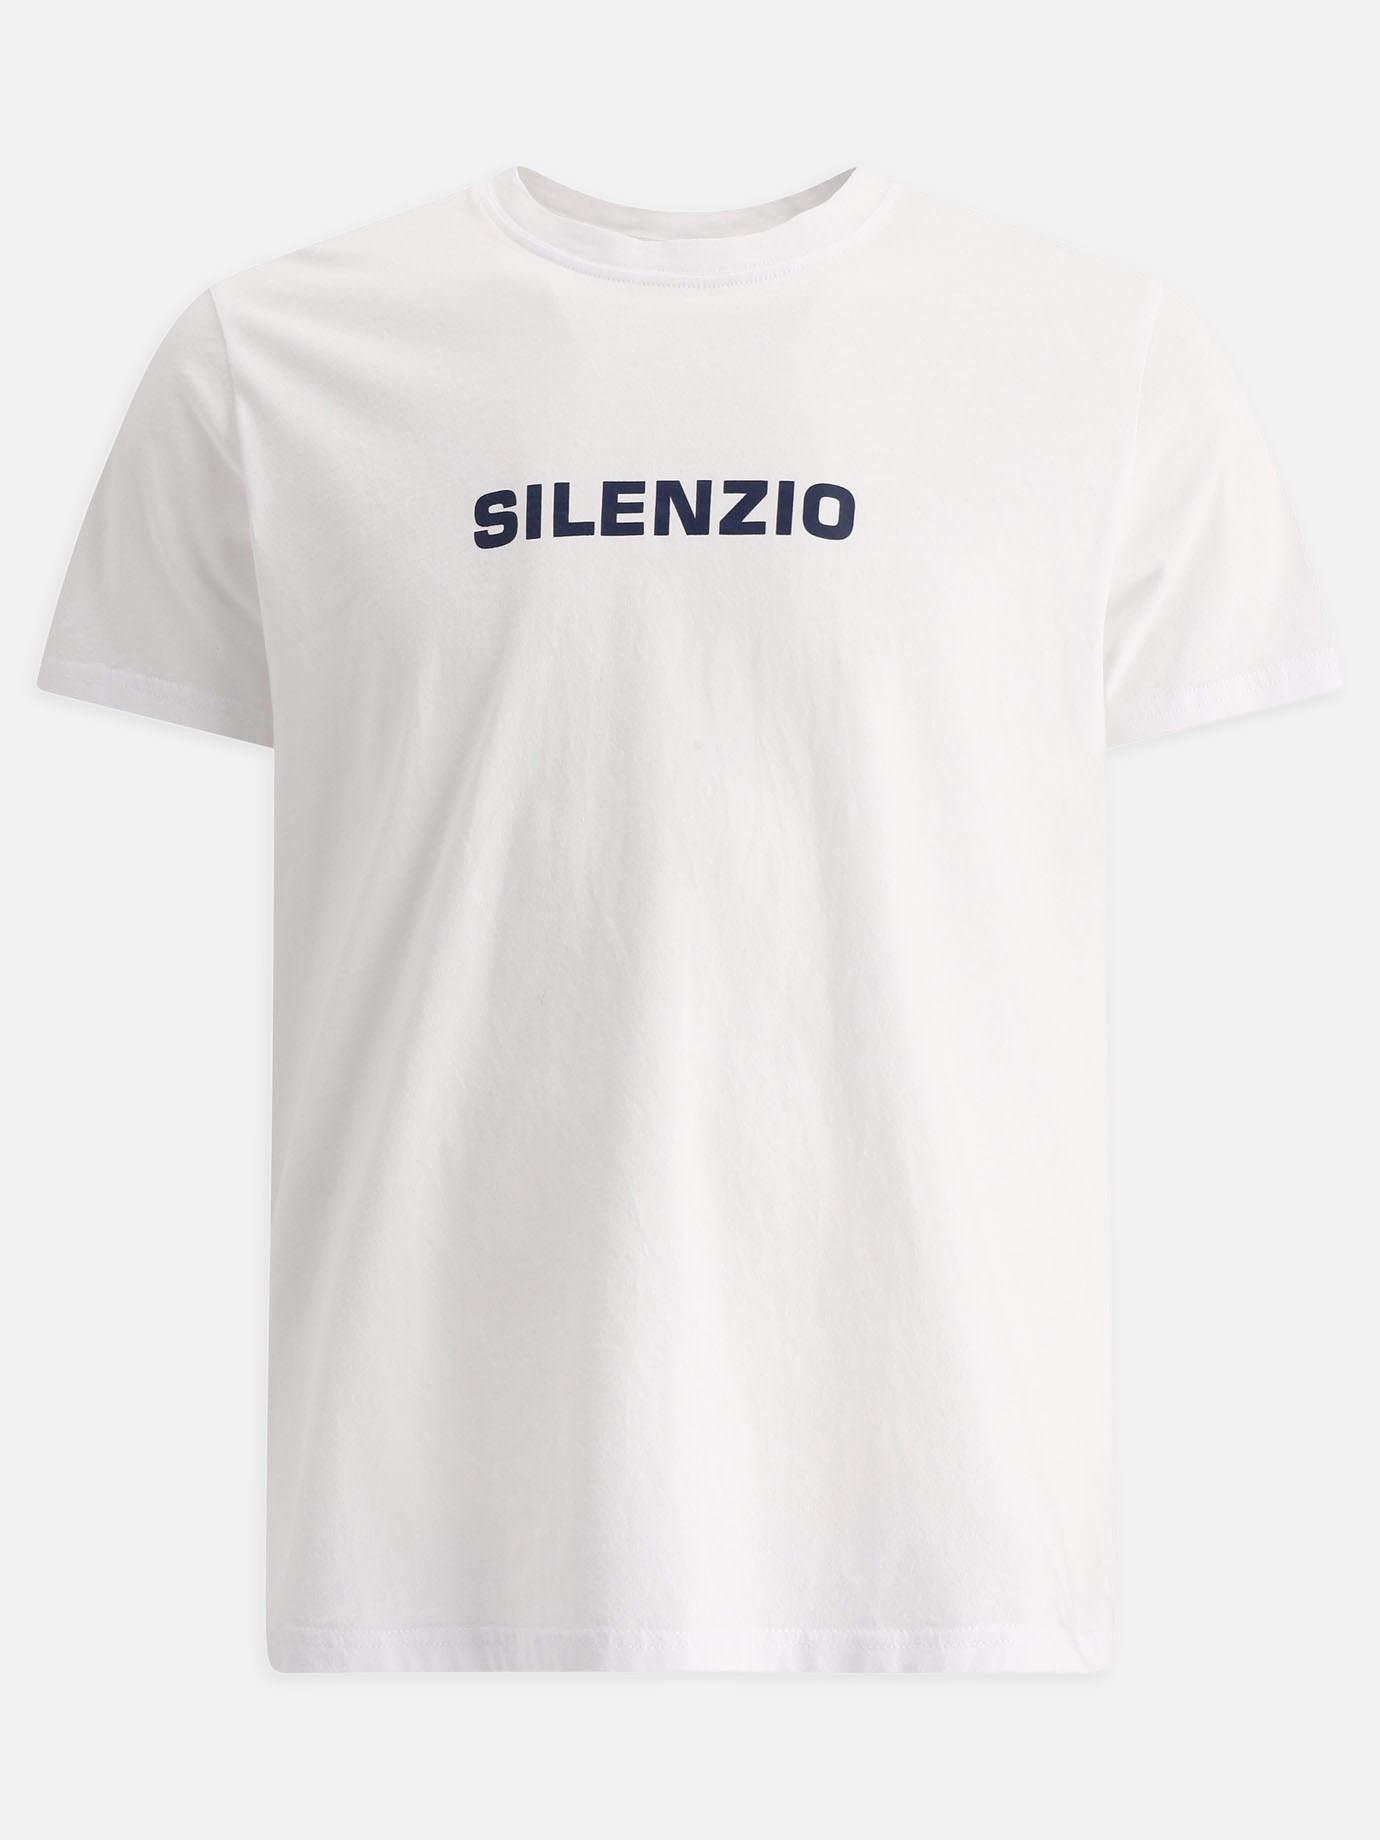  Silenzio  t-shirtby Aspesi - 0